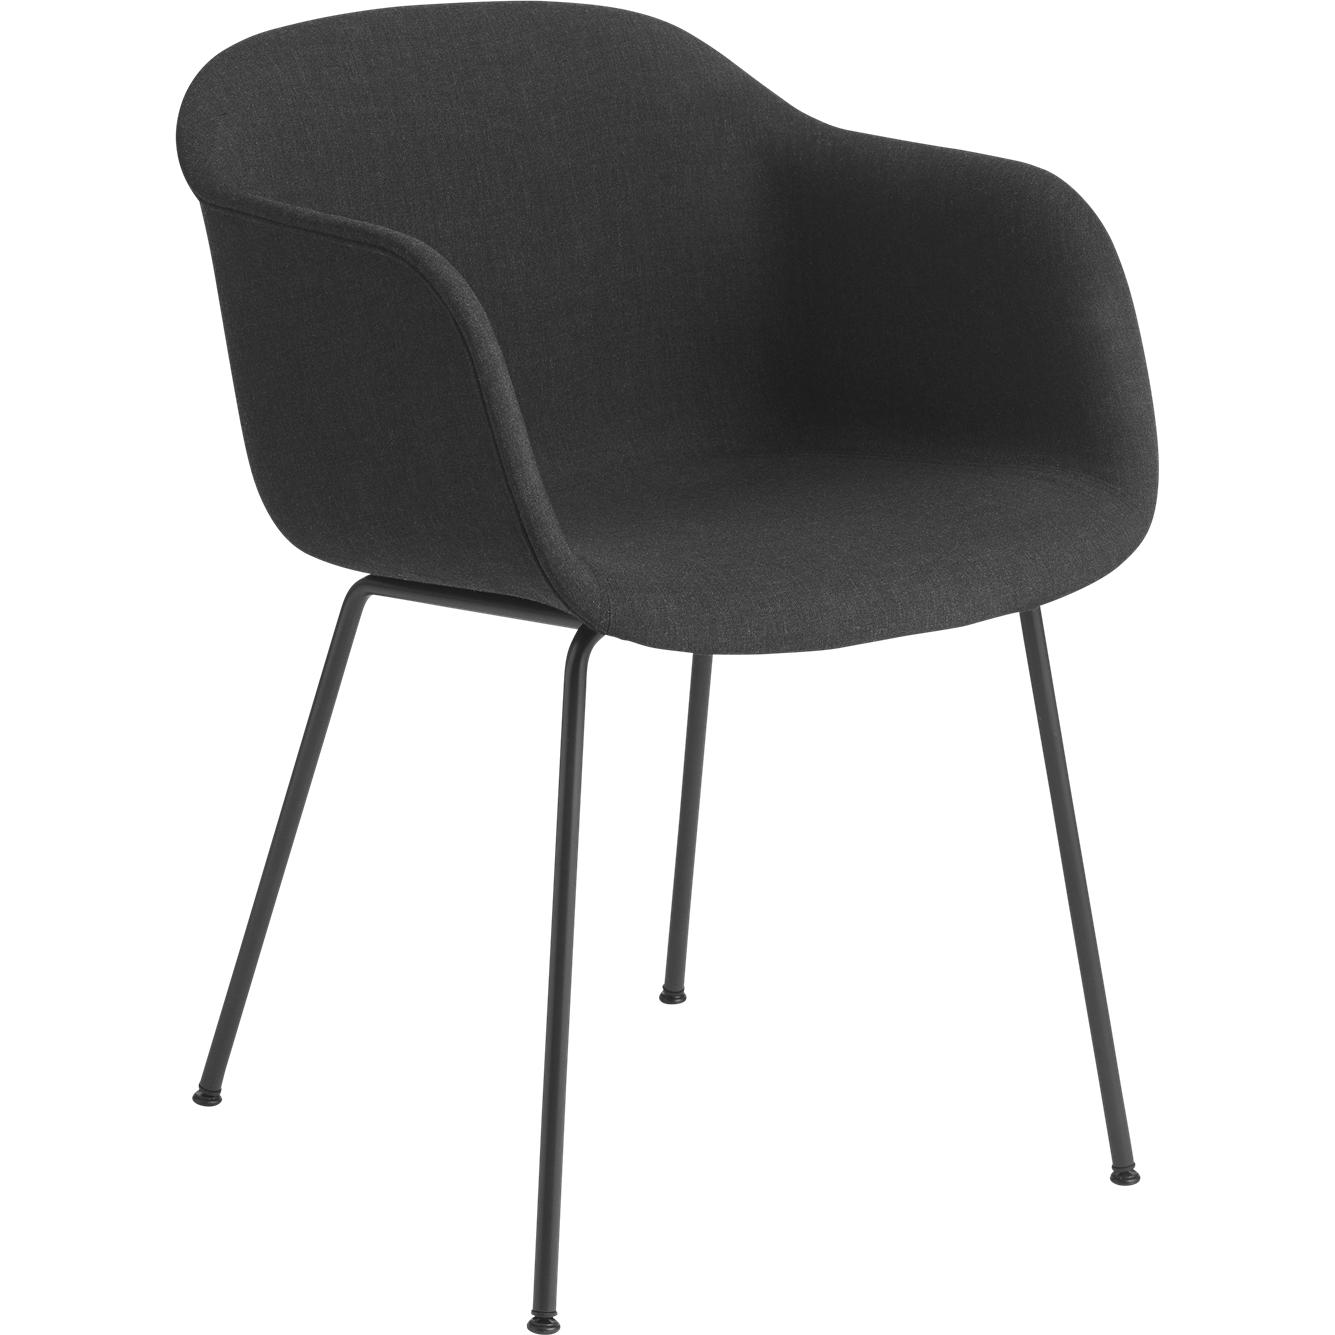 Base de tubo de sillón de fibra muuto, asiento de tela, negro